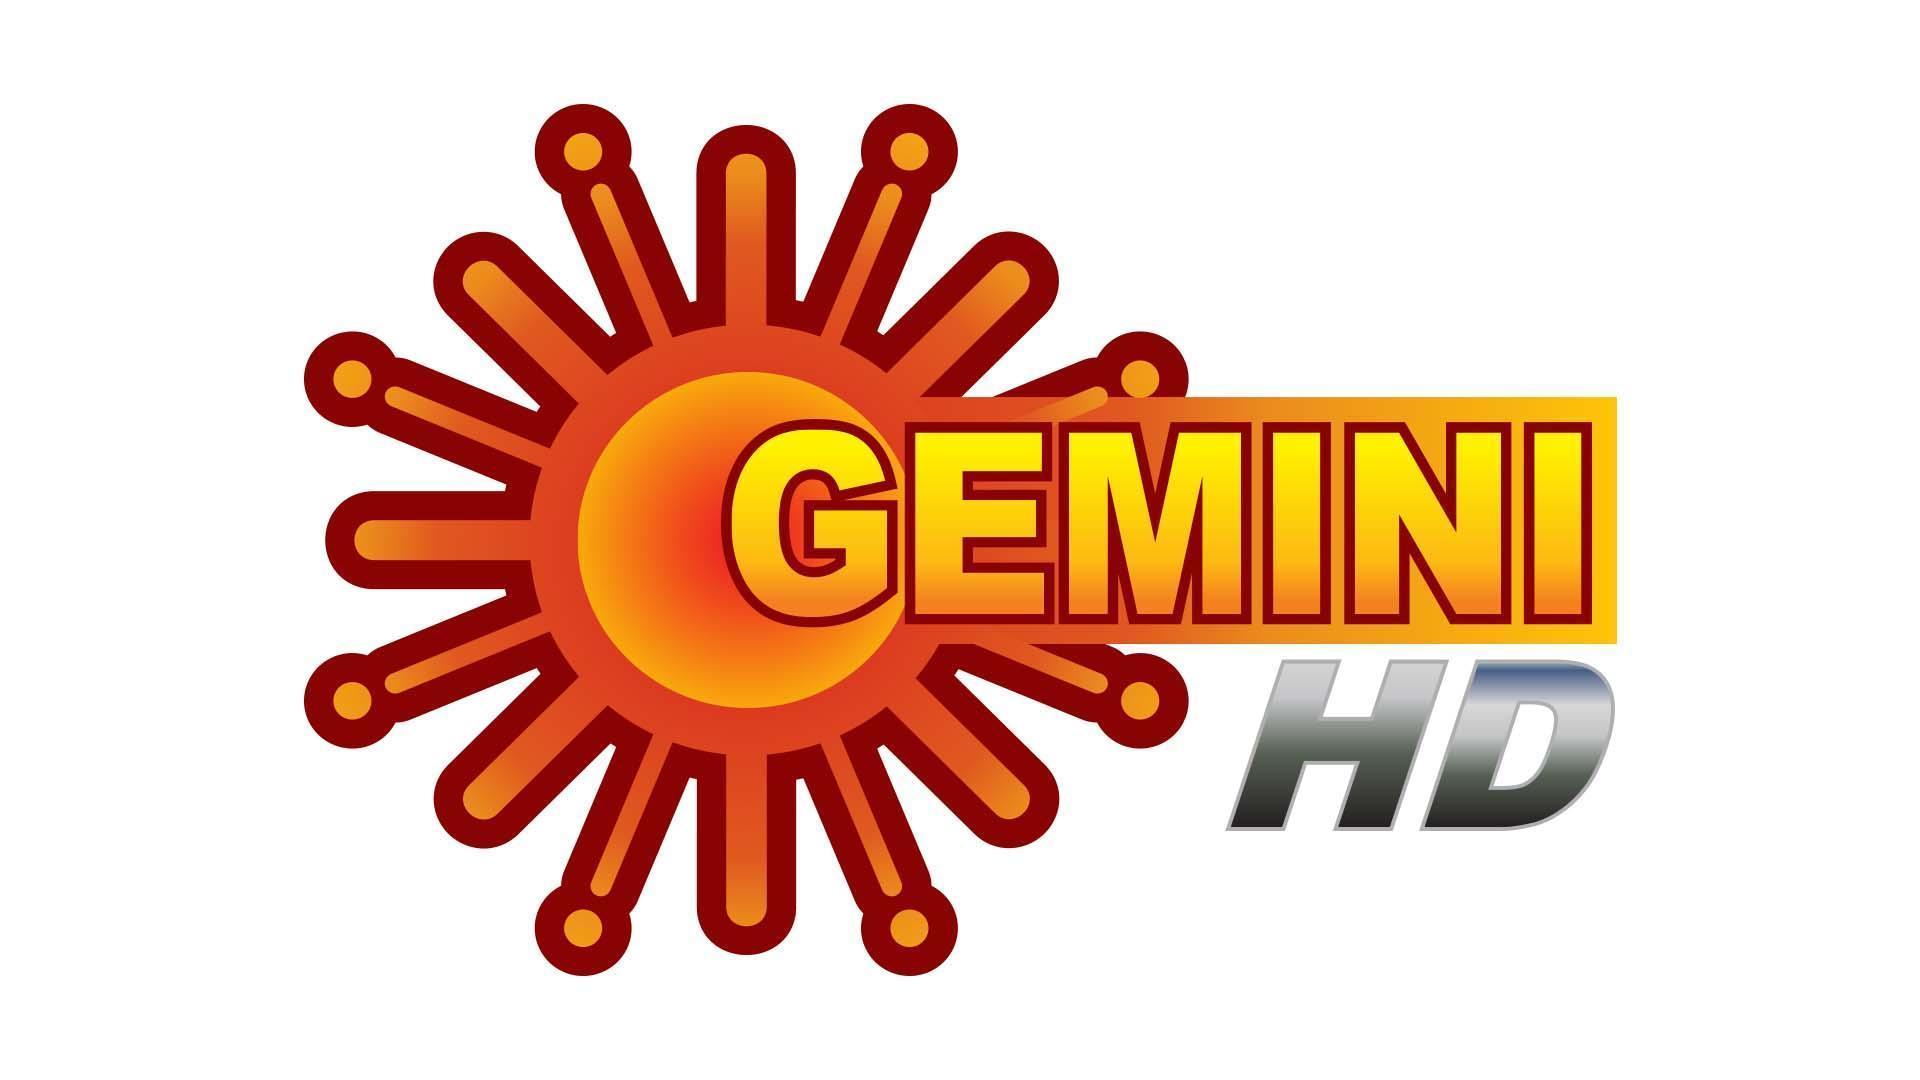 Gemini TV HD Online | Gemini TV HD Live | Watch Gemini TV HD Live